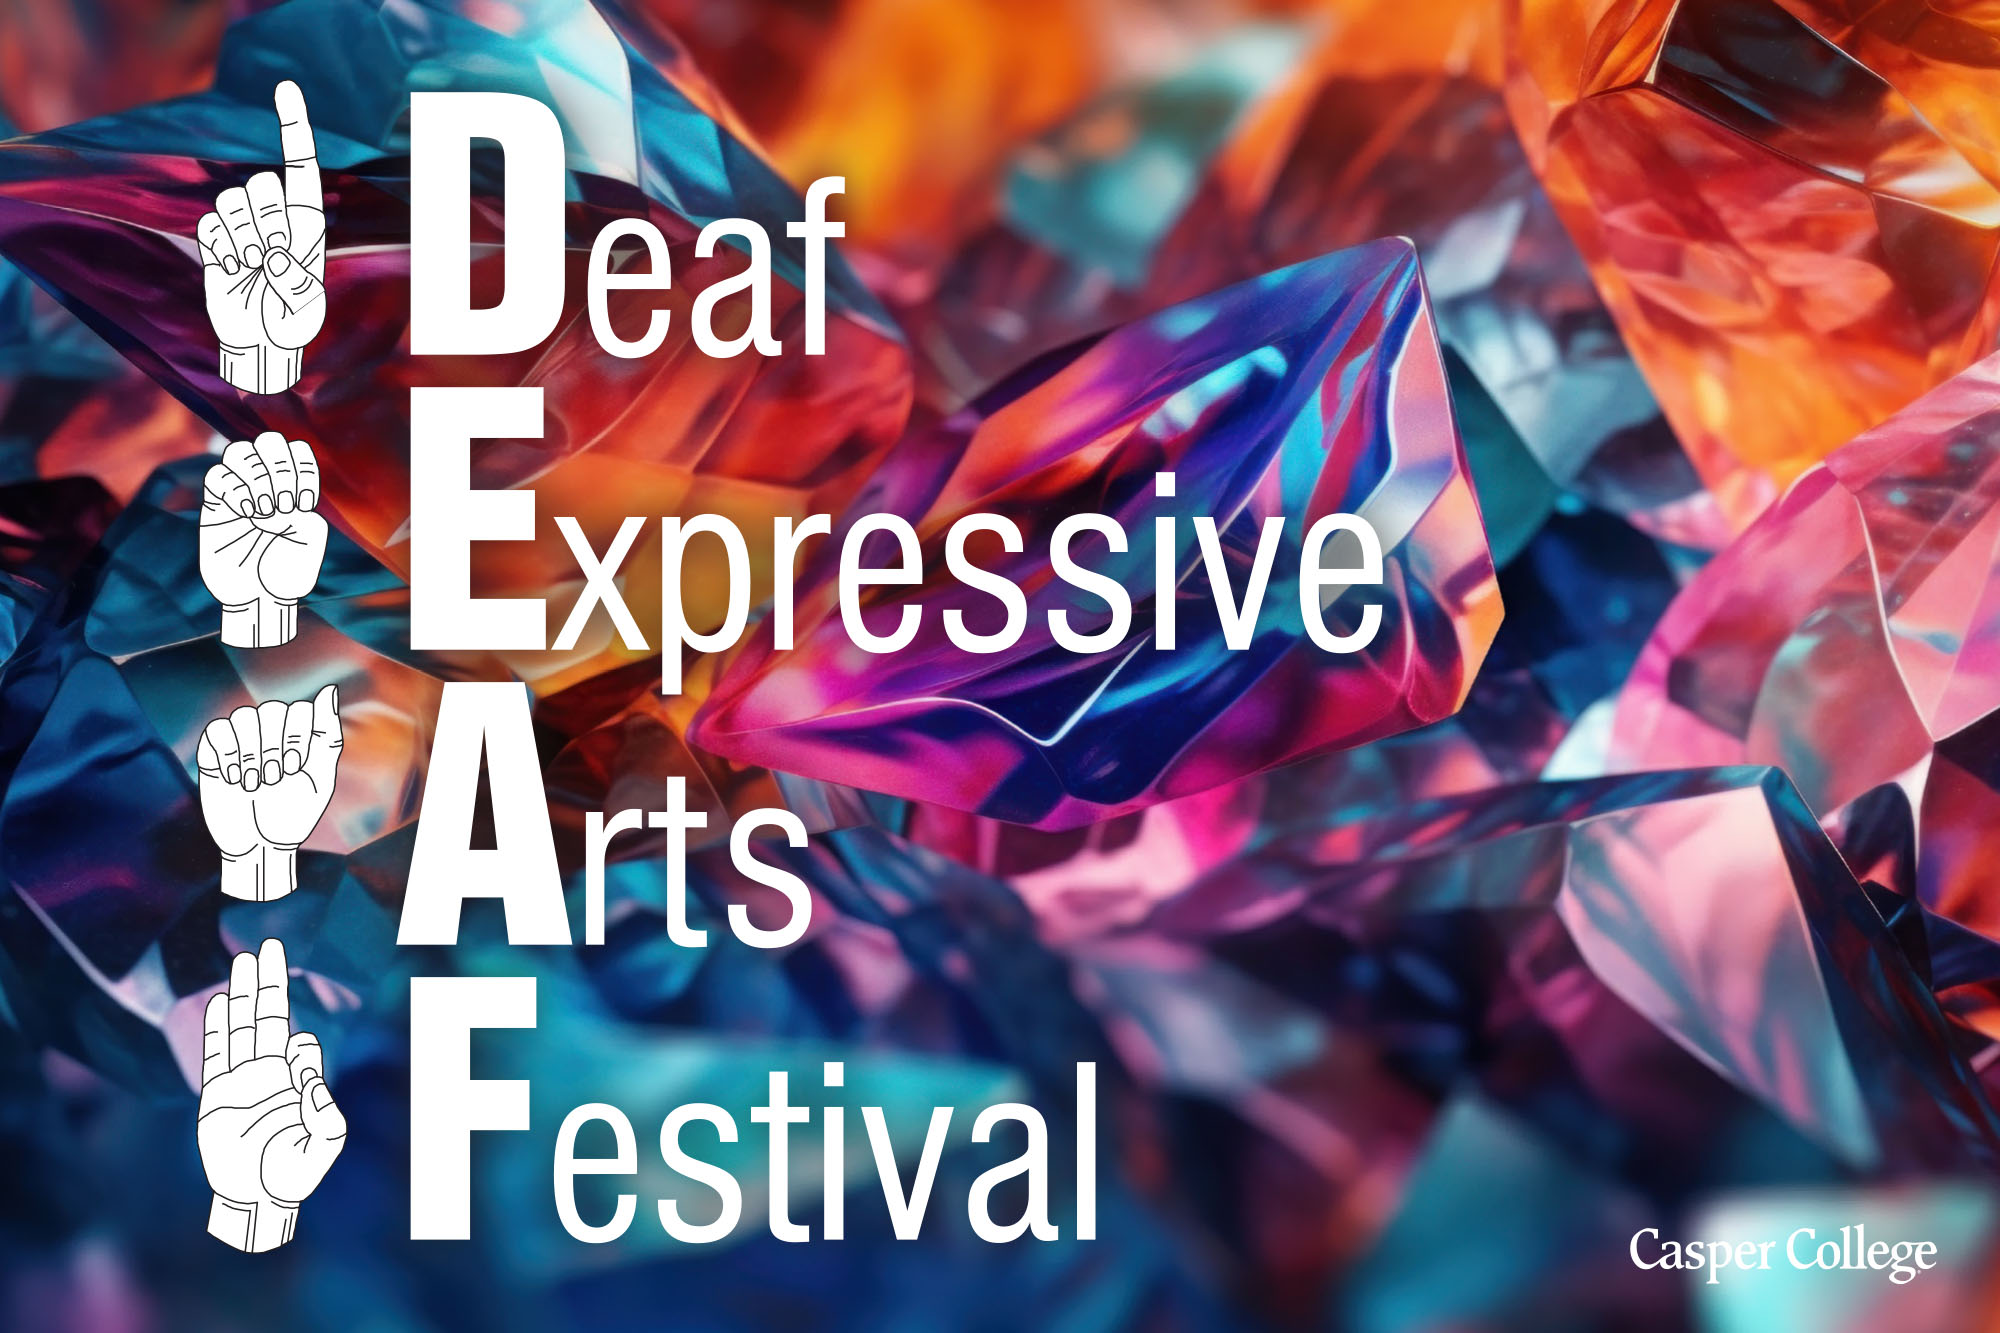 Image for Deaf Expressive Arts Festival press release.